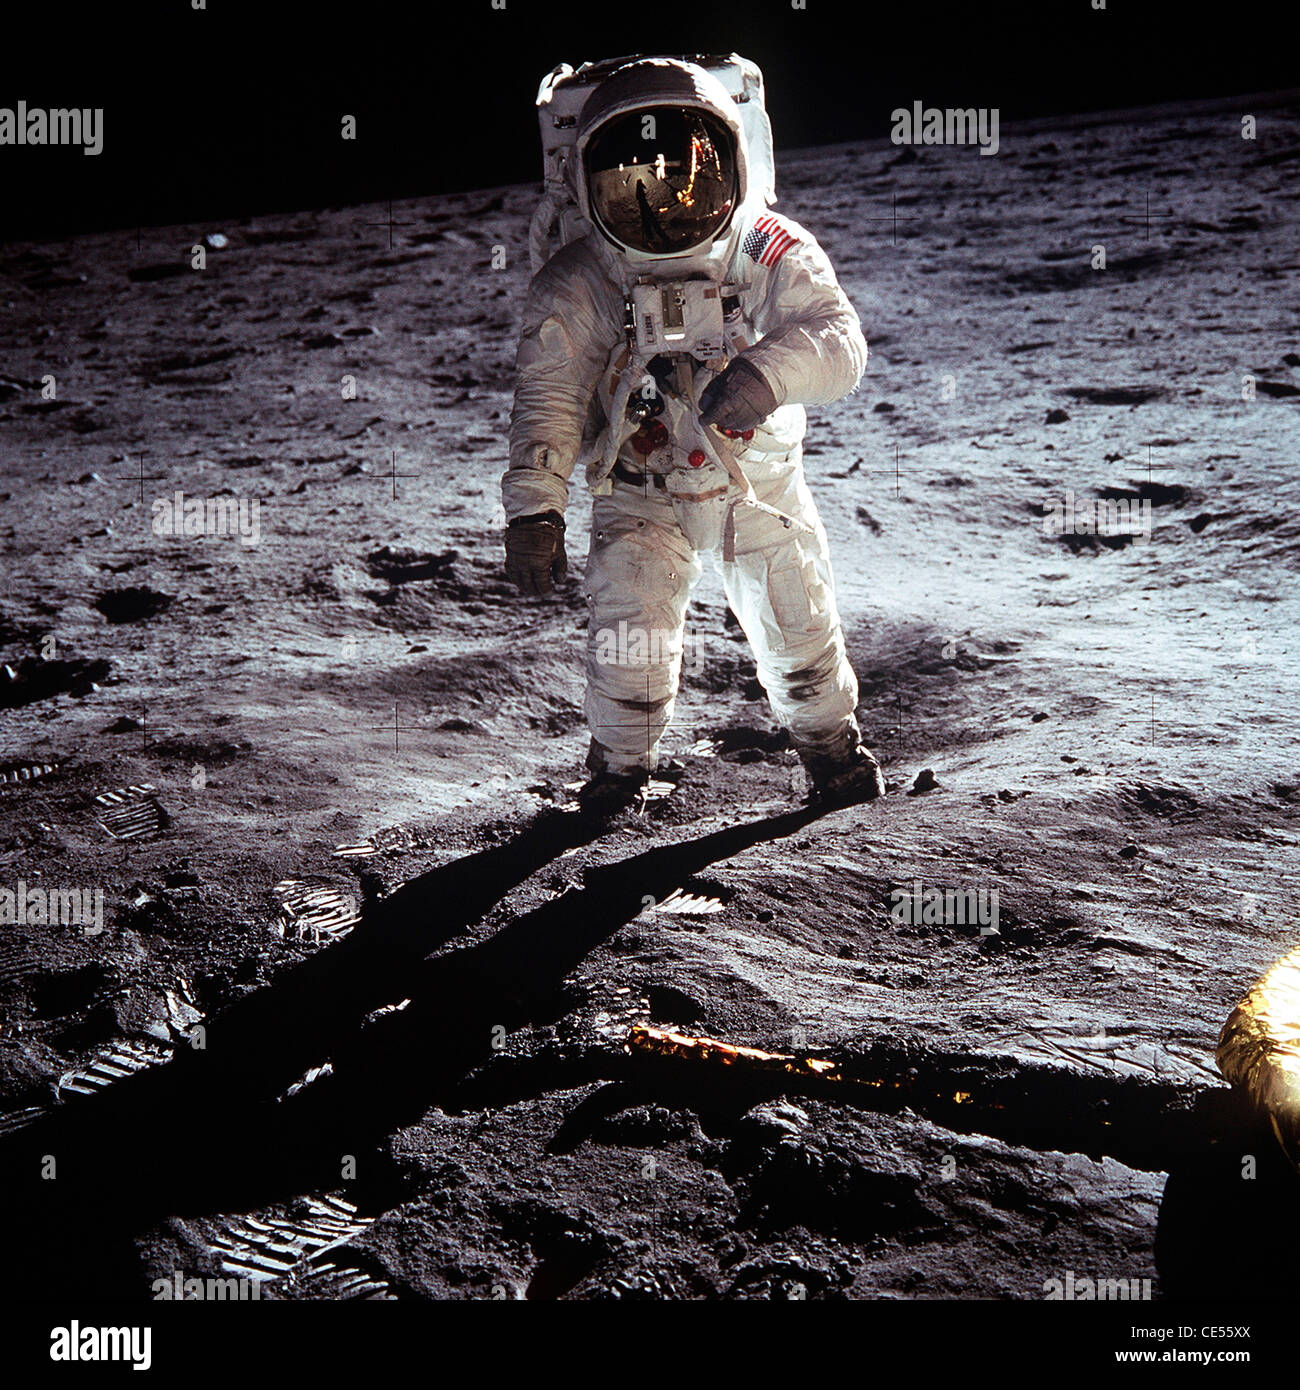 Buzz Aldrin, le pilote du premier atterrissage lunaire au cours d'une mission Apollo 11 sur la Lune activité extravéhiculaire Banque D'Images